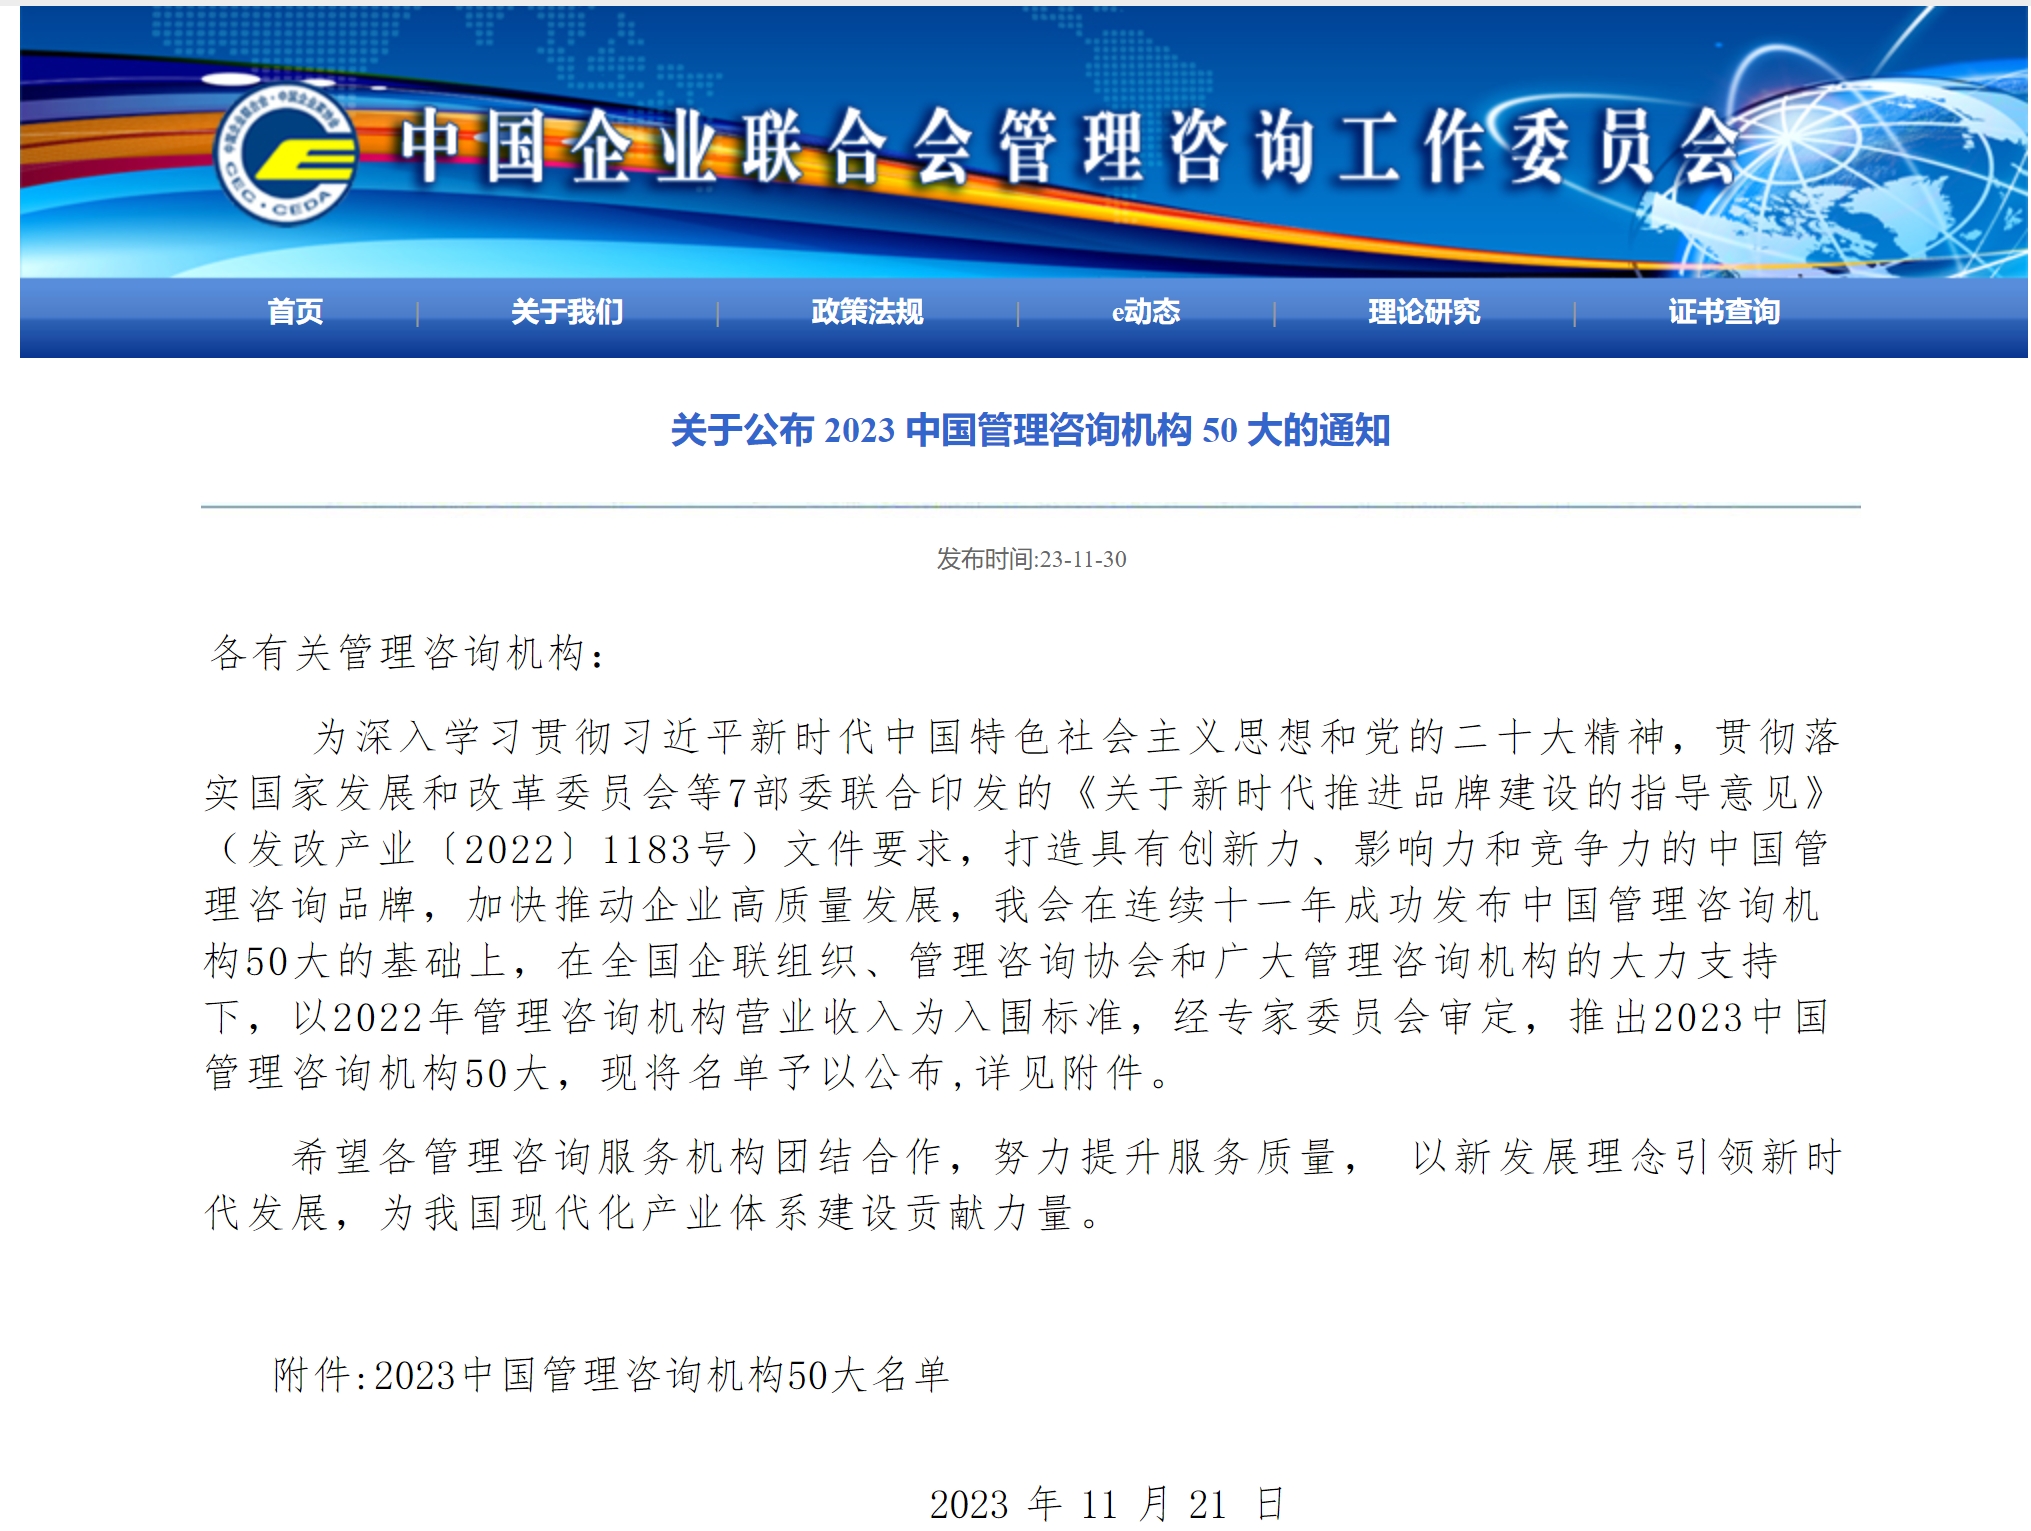 爱波瑞入选“2023中国管理咨询机构50大”名单